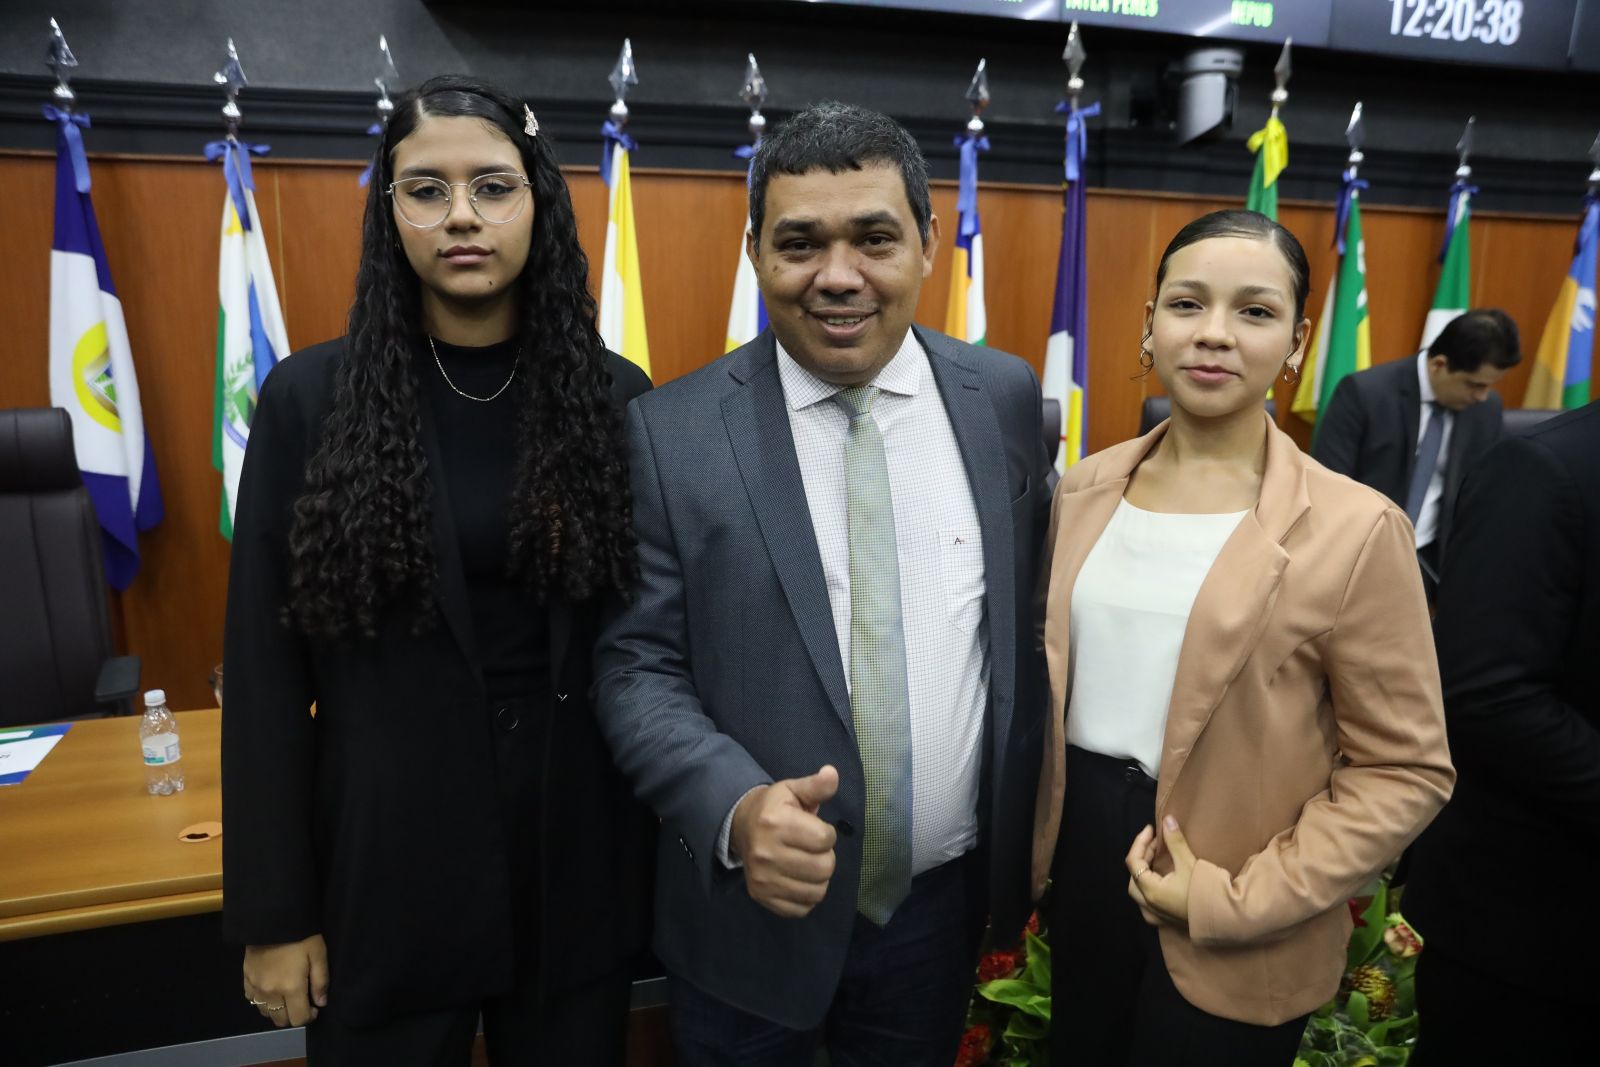 O presidente da Assembleia, deputado Sampio, entre jovens parlamentares de Roraima.